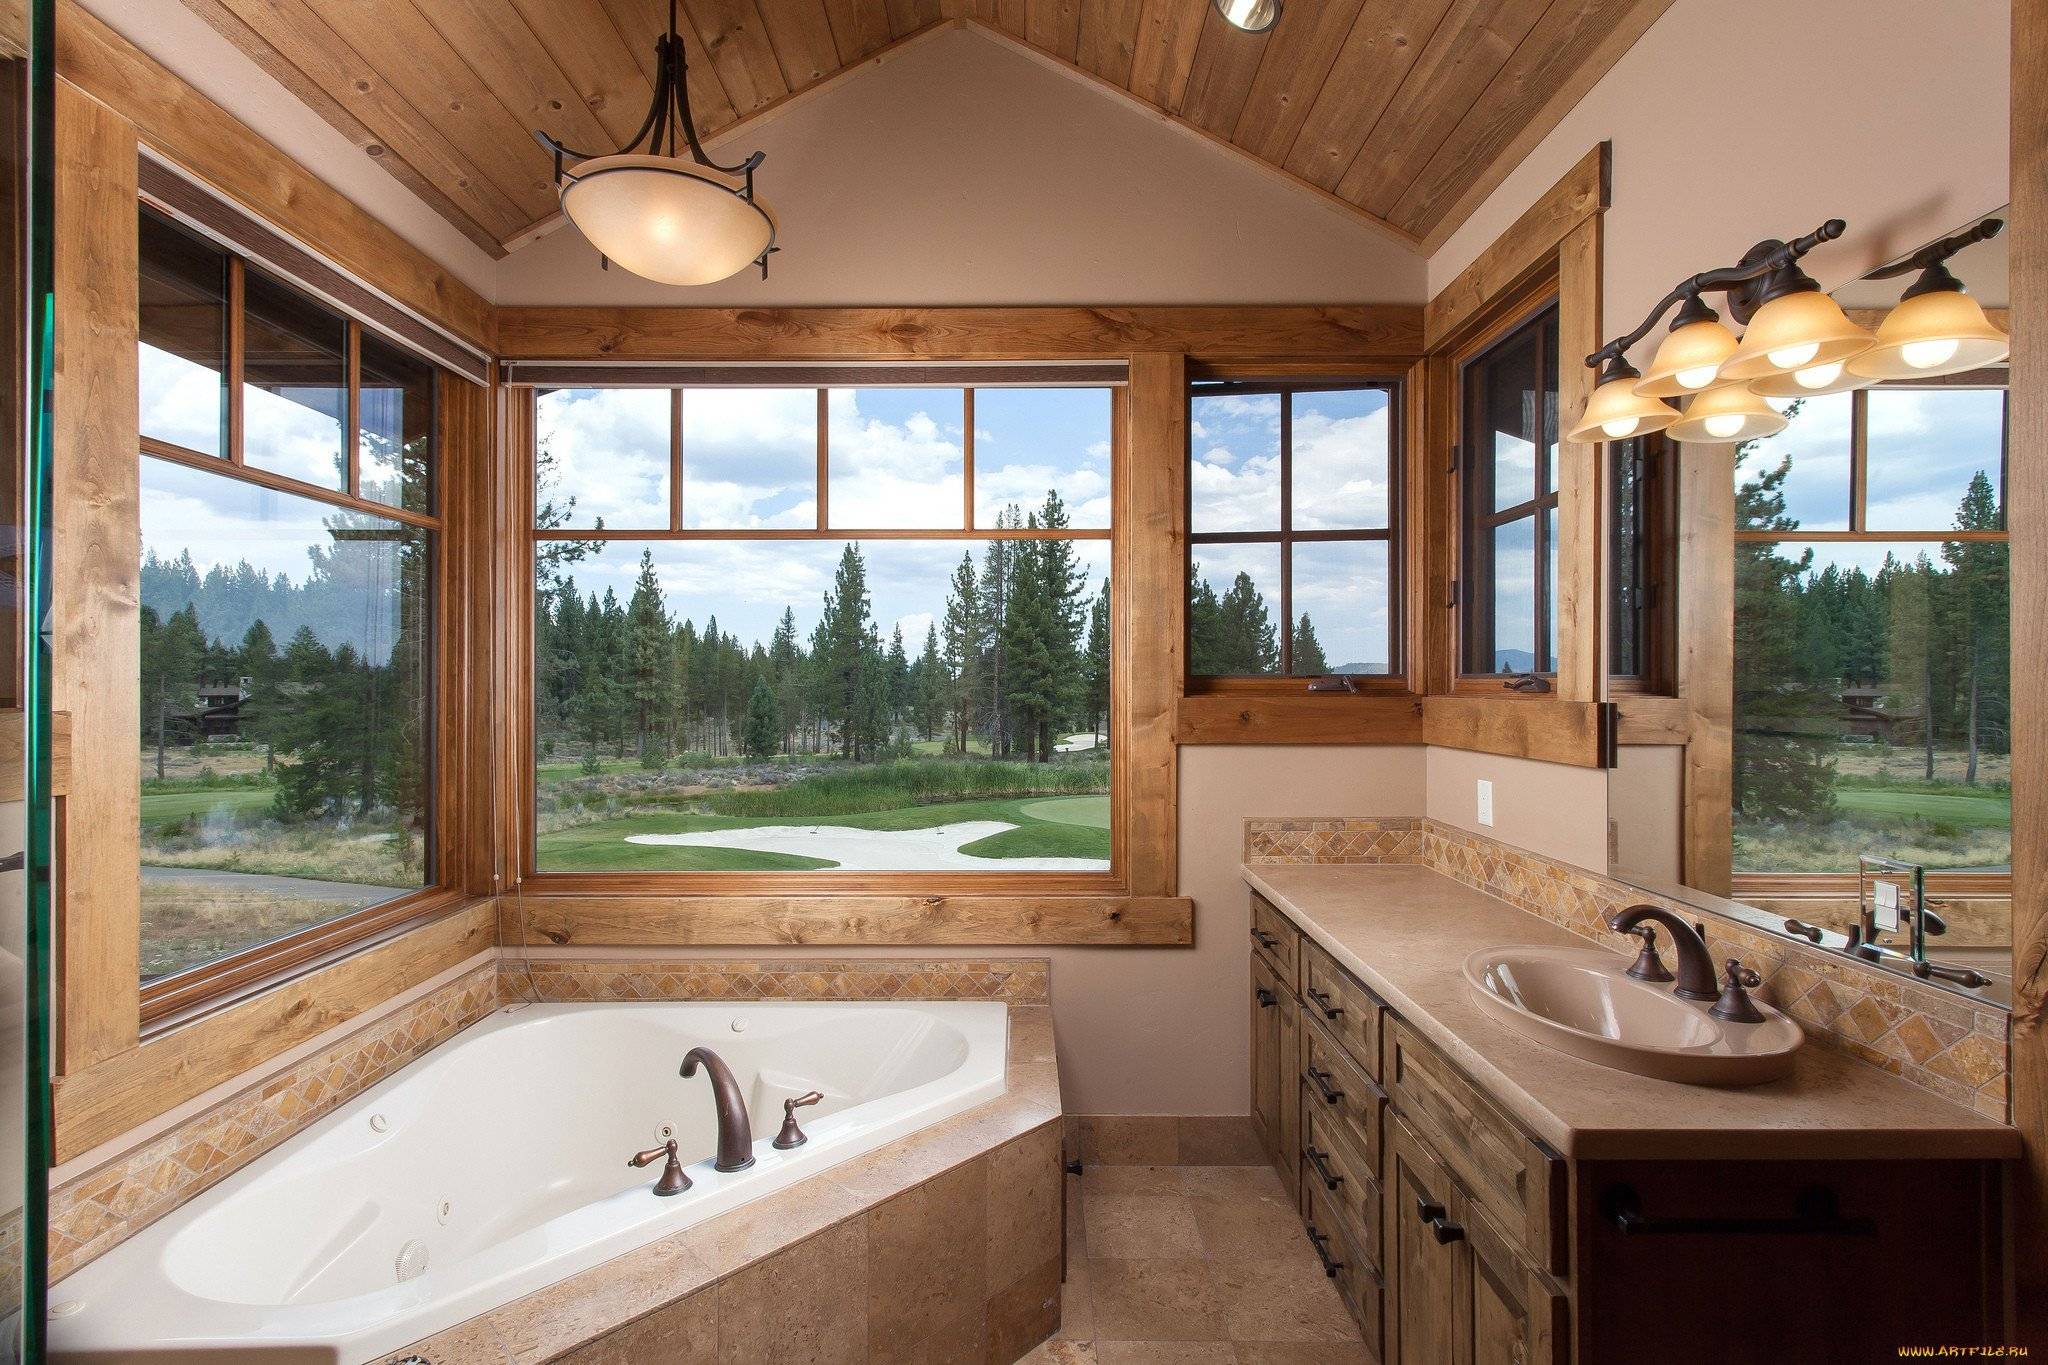 Ванная с окном: дизайн и фото. как оформить дизайн ванной комнаты с окном. особенности дизайна ванной комнаты с окном.